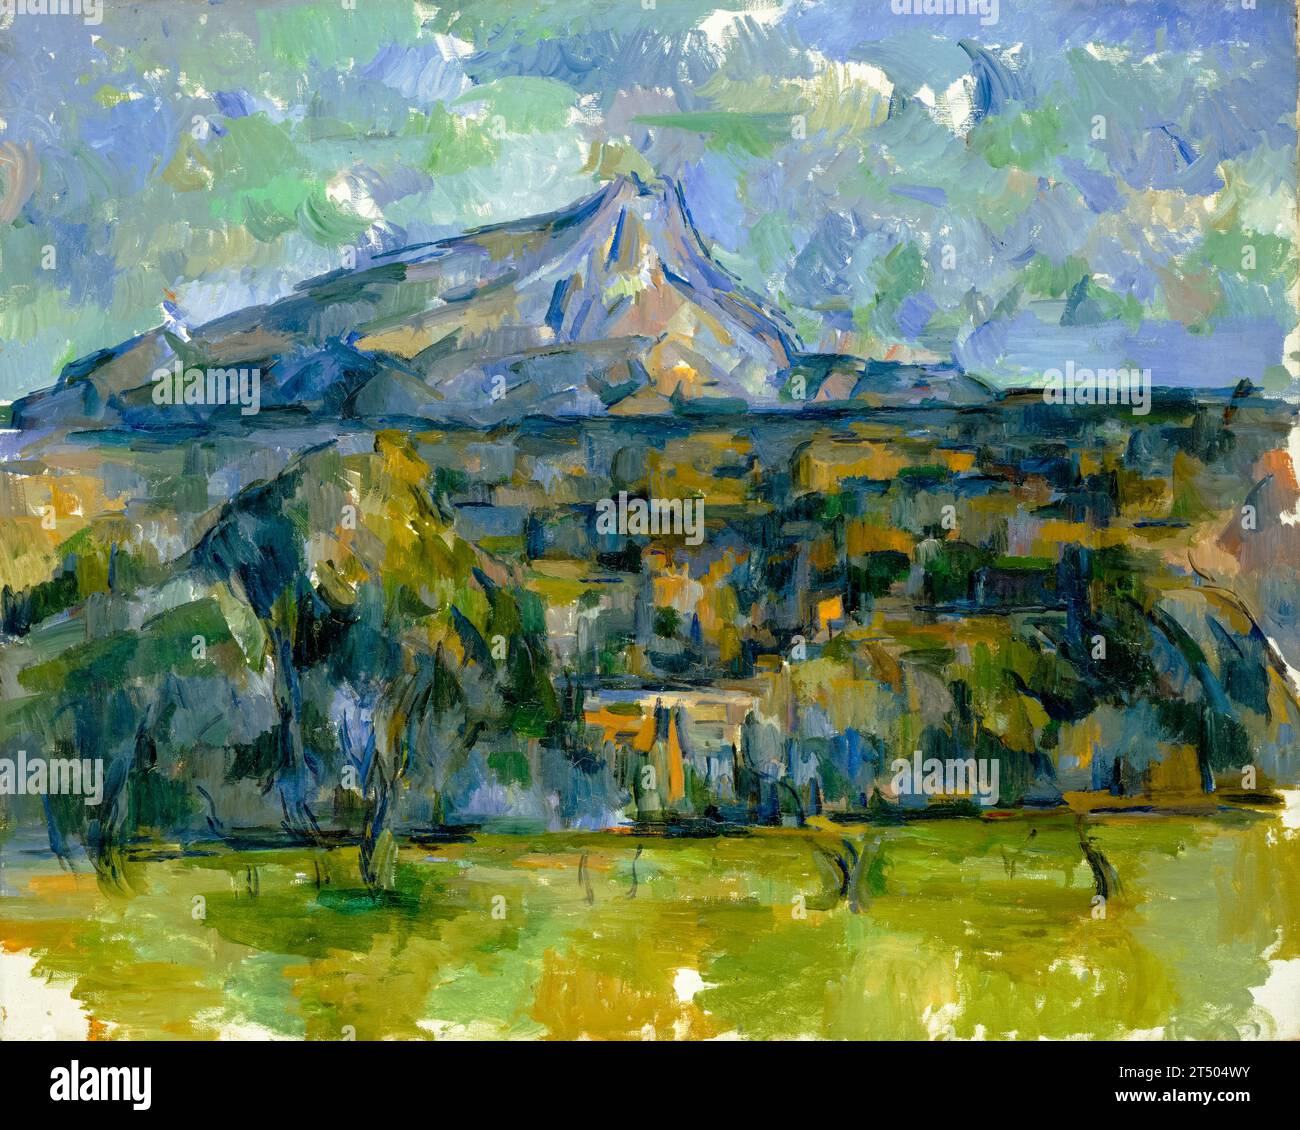 Paul Cézanne, Mont Sainte-victoire, peinture de paysage à l'huile sur toile, 1902-1906 Banque D'Images